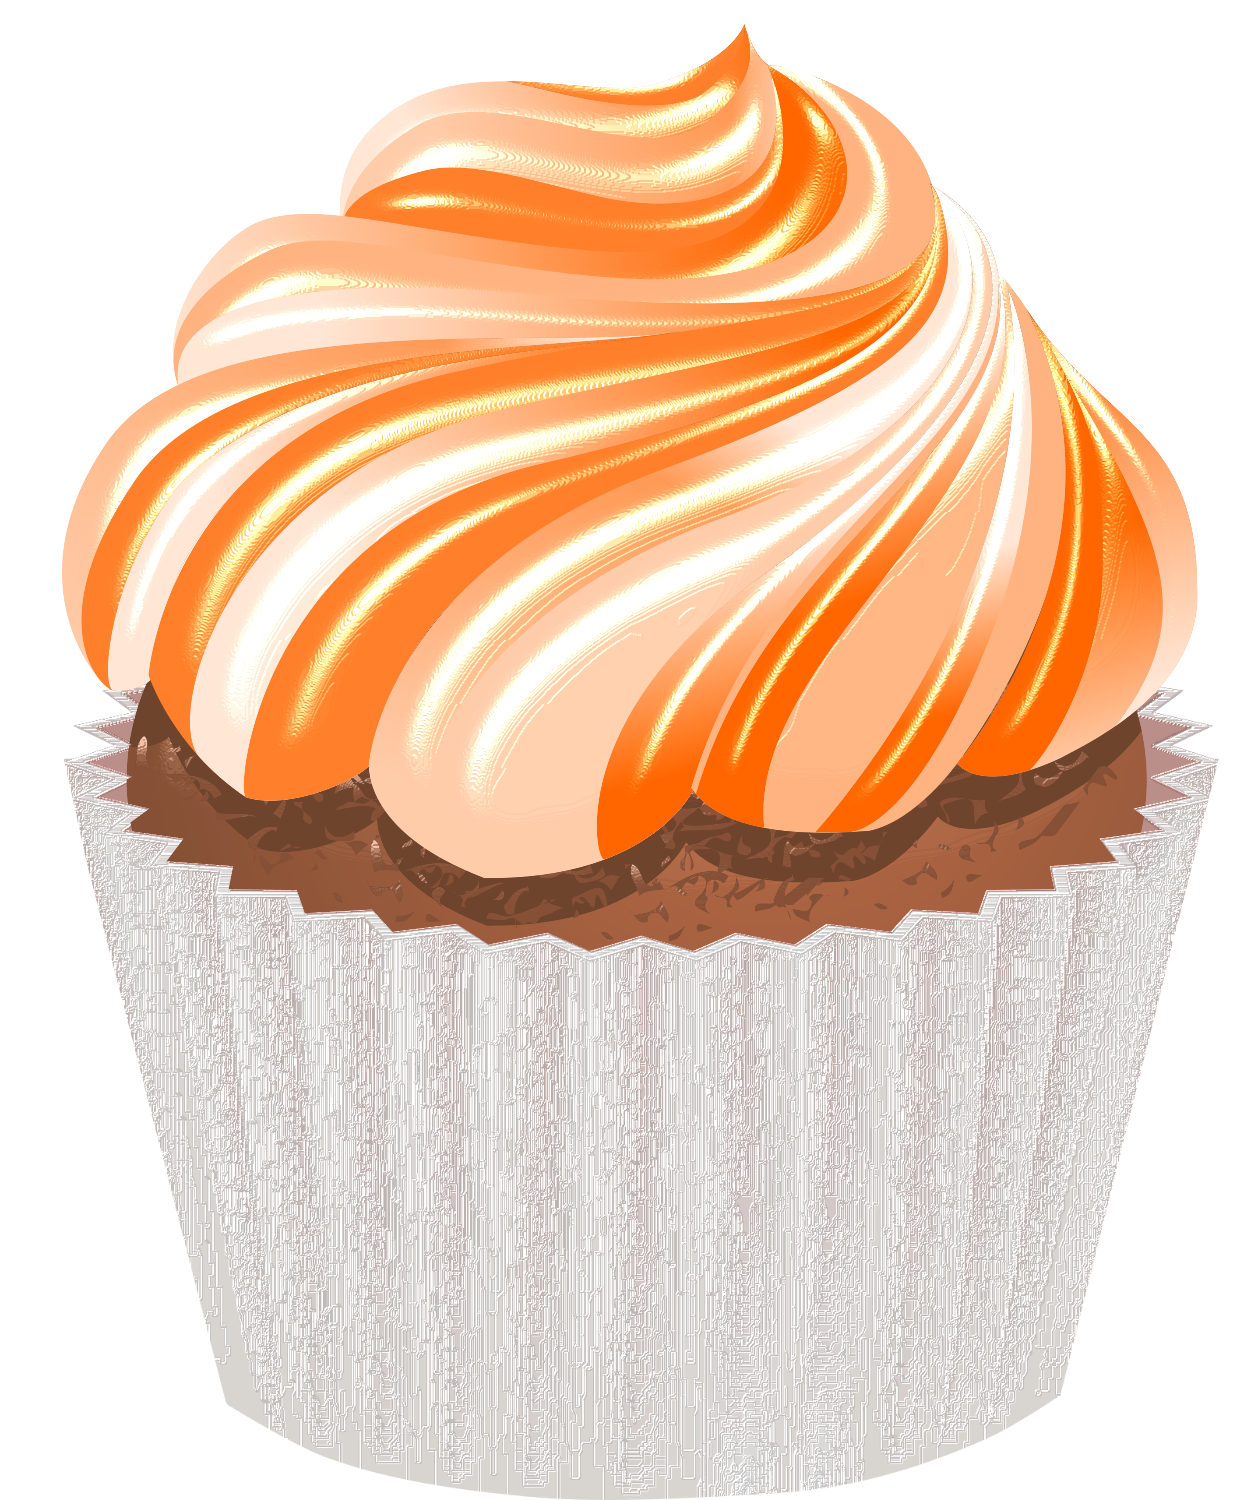 cupcake-chantilly-png-imagem-de-cupcake-chantilly-png-gratuita